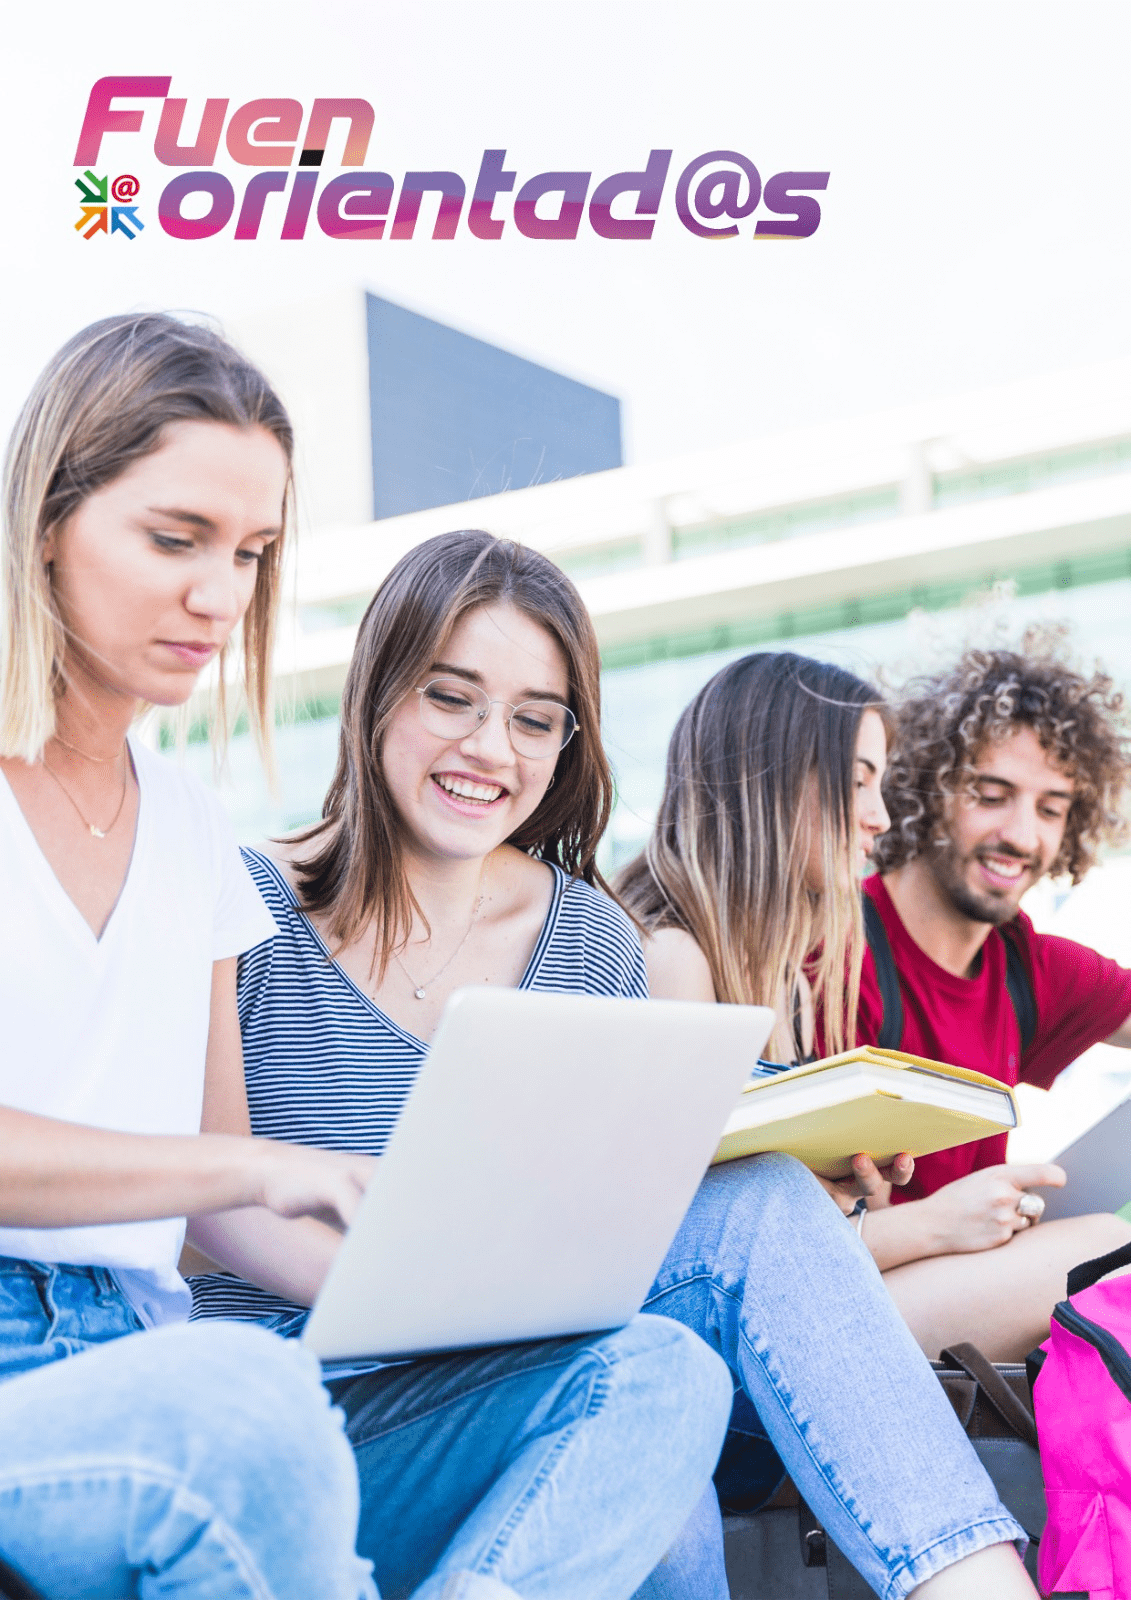 Fuenorientad@s, la nueva app gratuita del Ayuntamiento de Fuenlabrada, ayuda a estudiantes a elegir su futuro académico y profesional